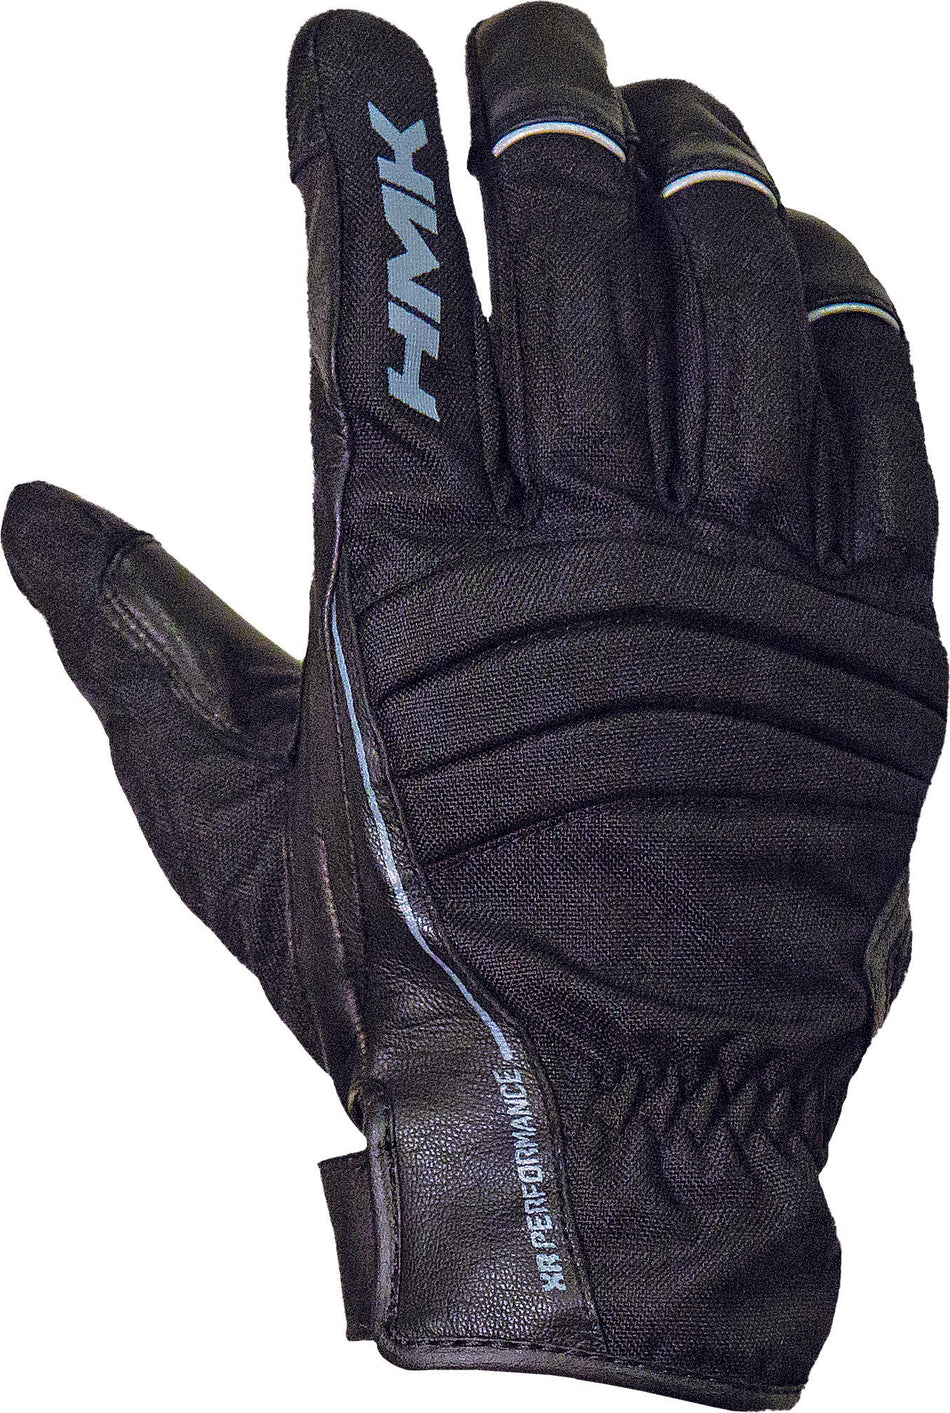 HMK Team Glove 2x S/M Black HM7GTEAB2X